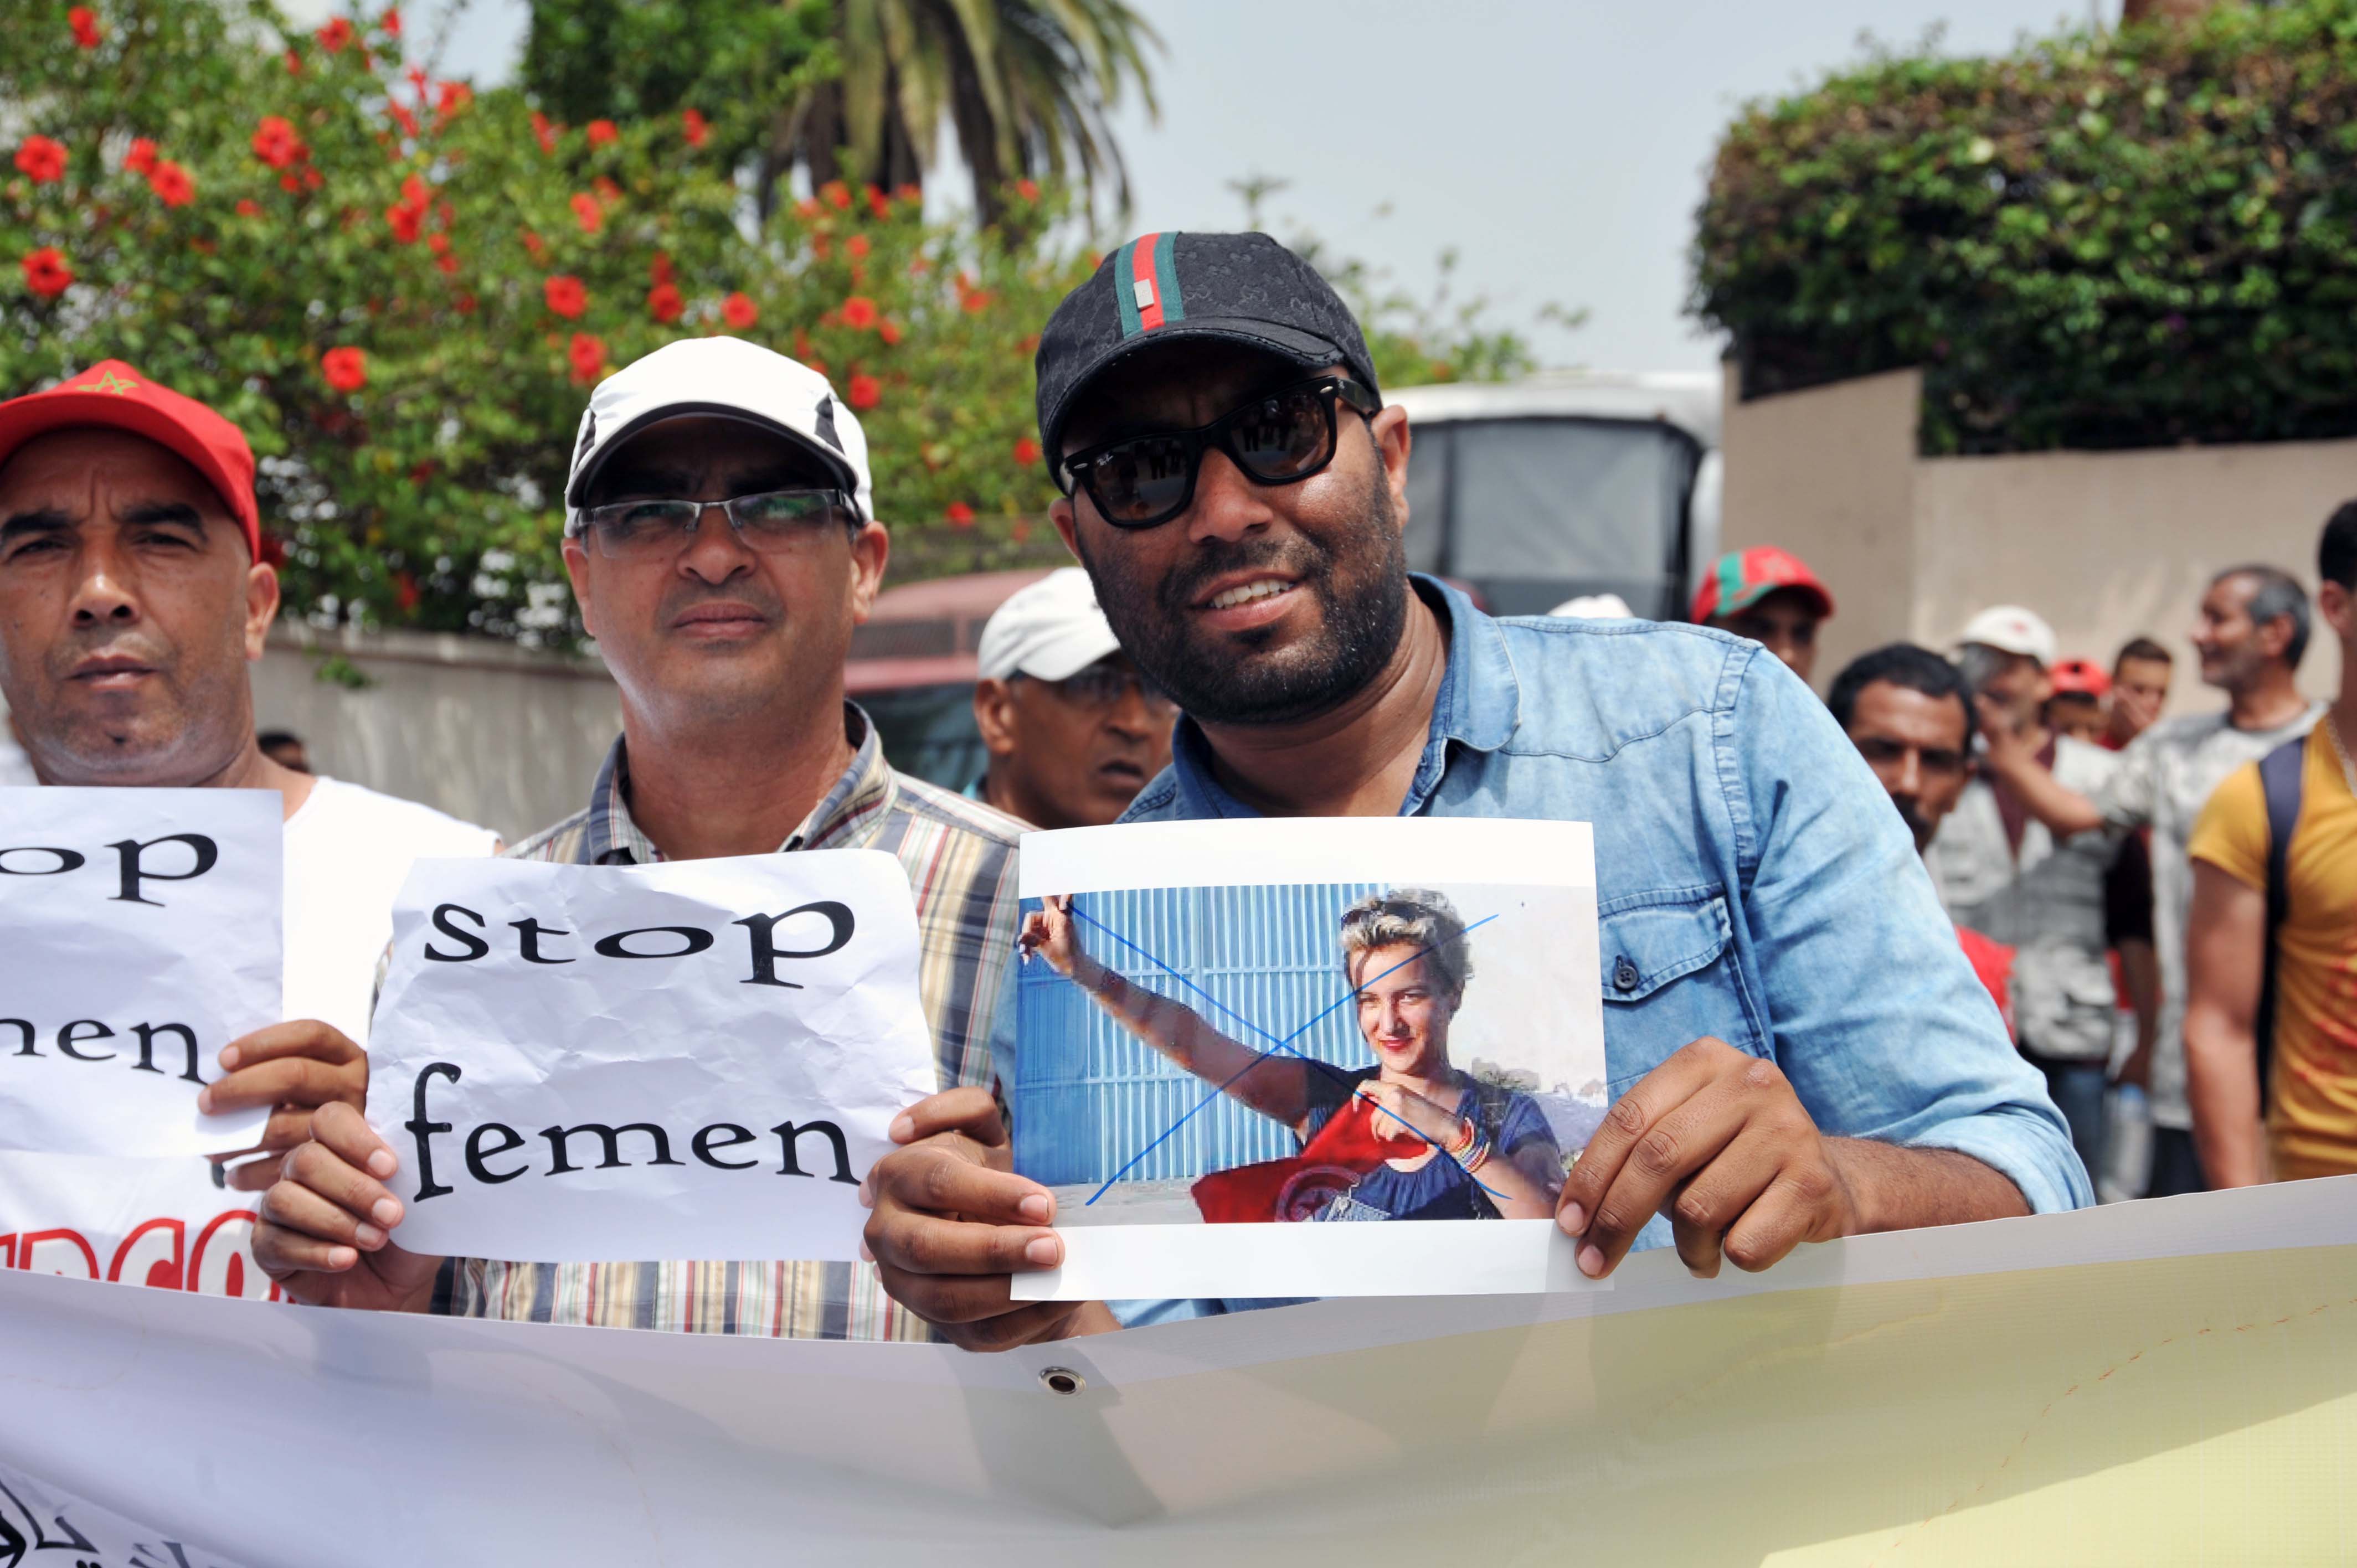 بسبب عري شابات “فيمن”.. وقفة احتجاجية أمام سفارة فرنسا في الرباط (صور)